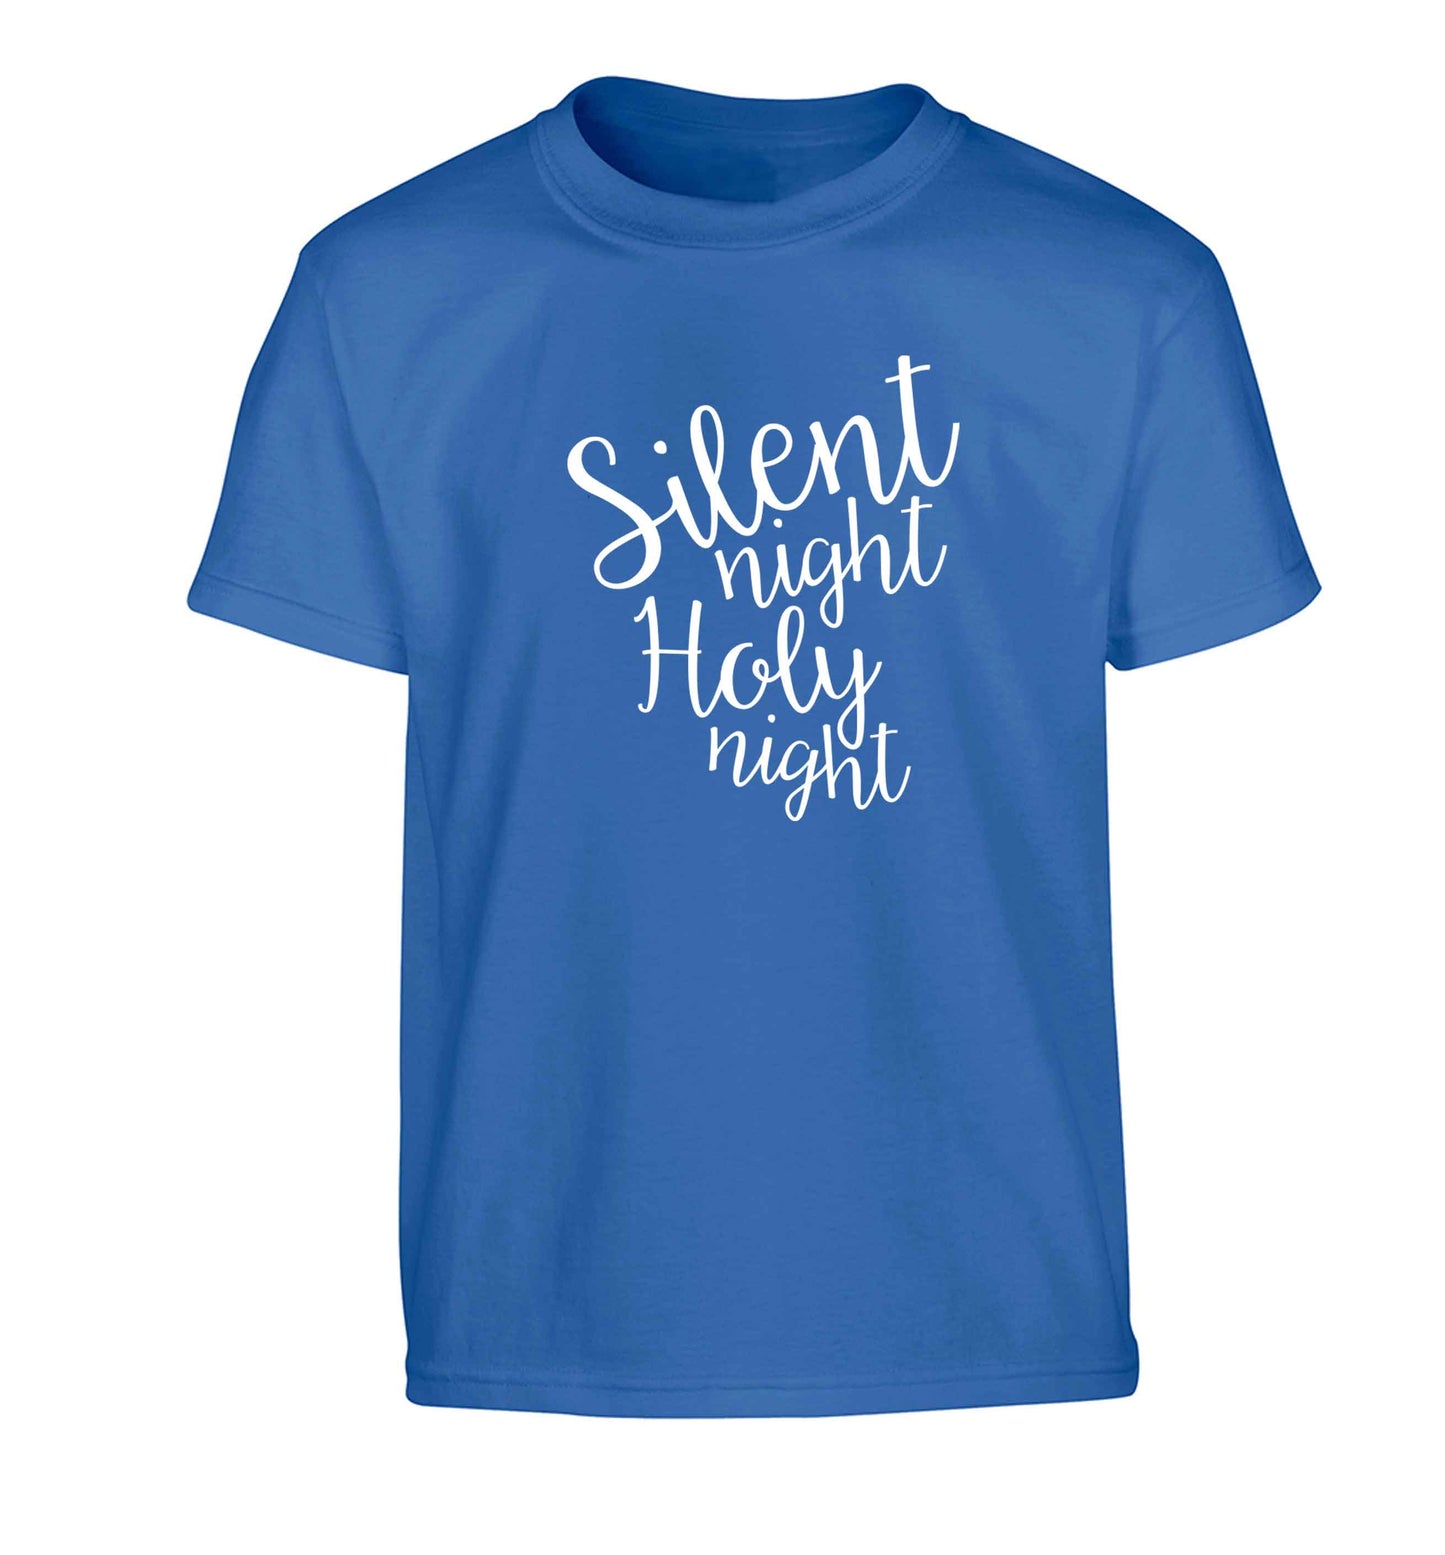 Silent night holy night Children's blue Tshirt 12-13 Years